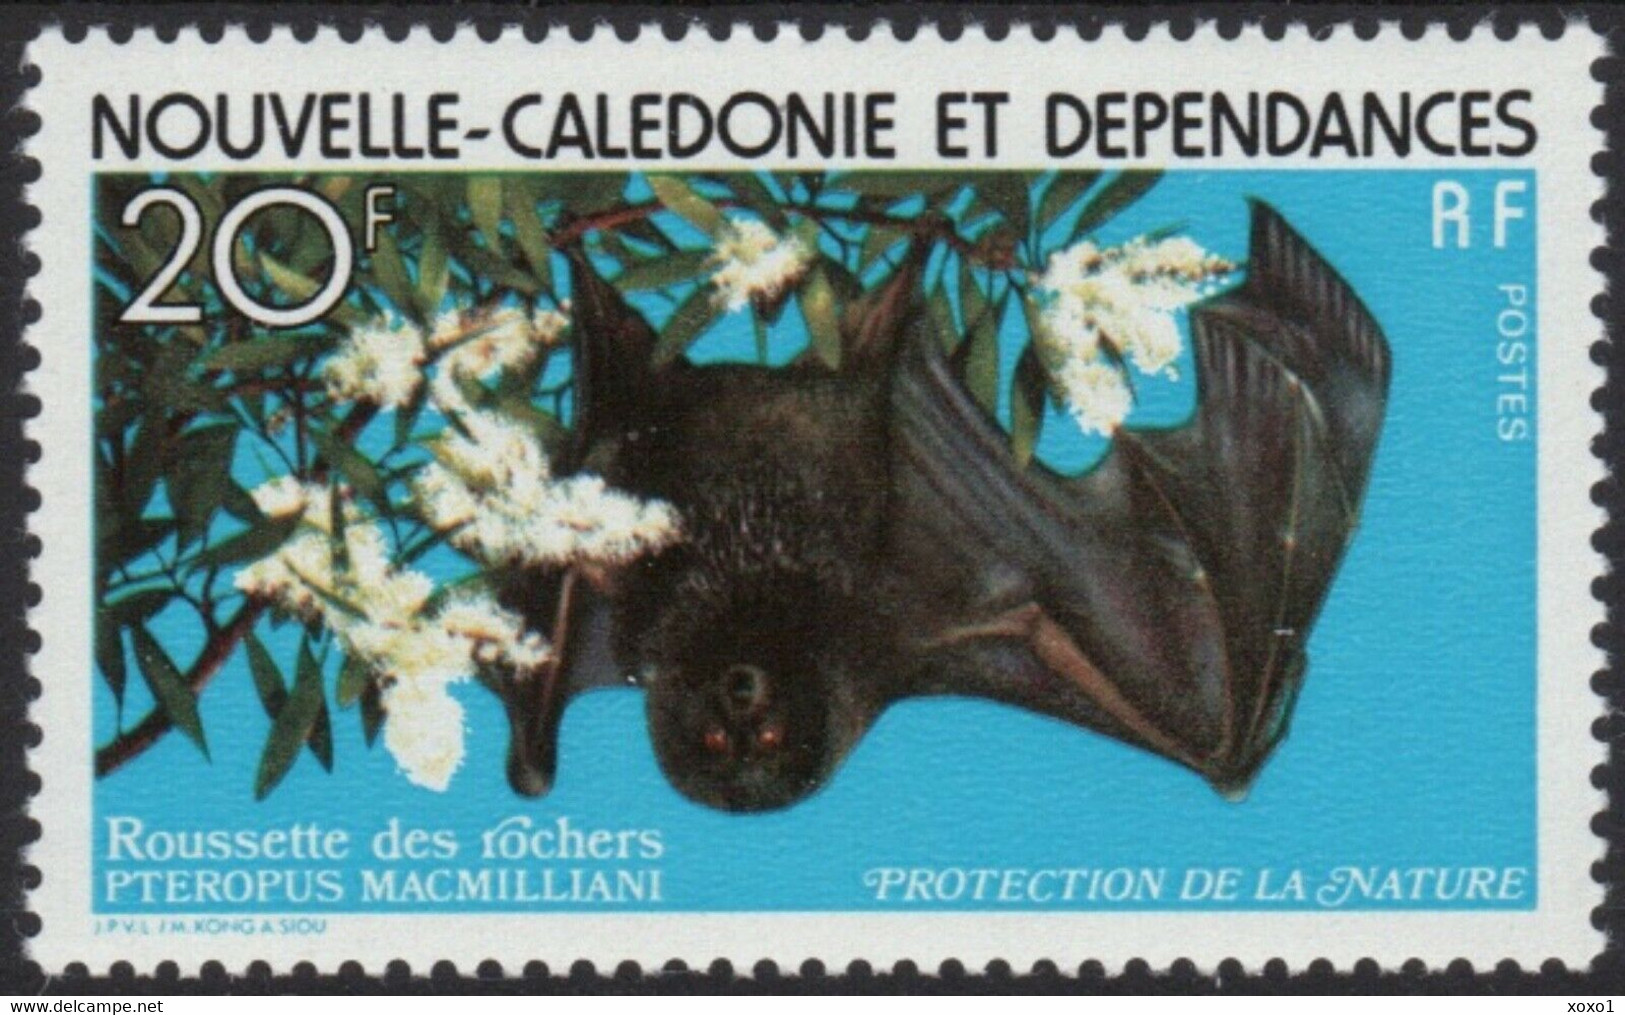 New Caledonia 1978 MiNr. 612 Neukaledonien Bats Flying Fox 1v MNH** 6,00 € - Fledermäuse